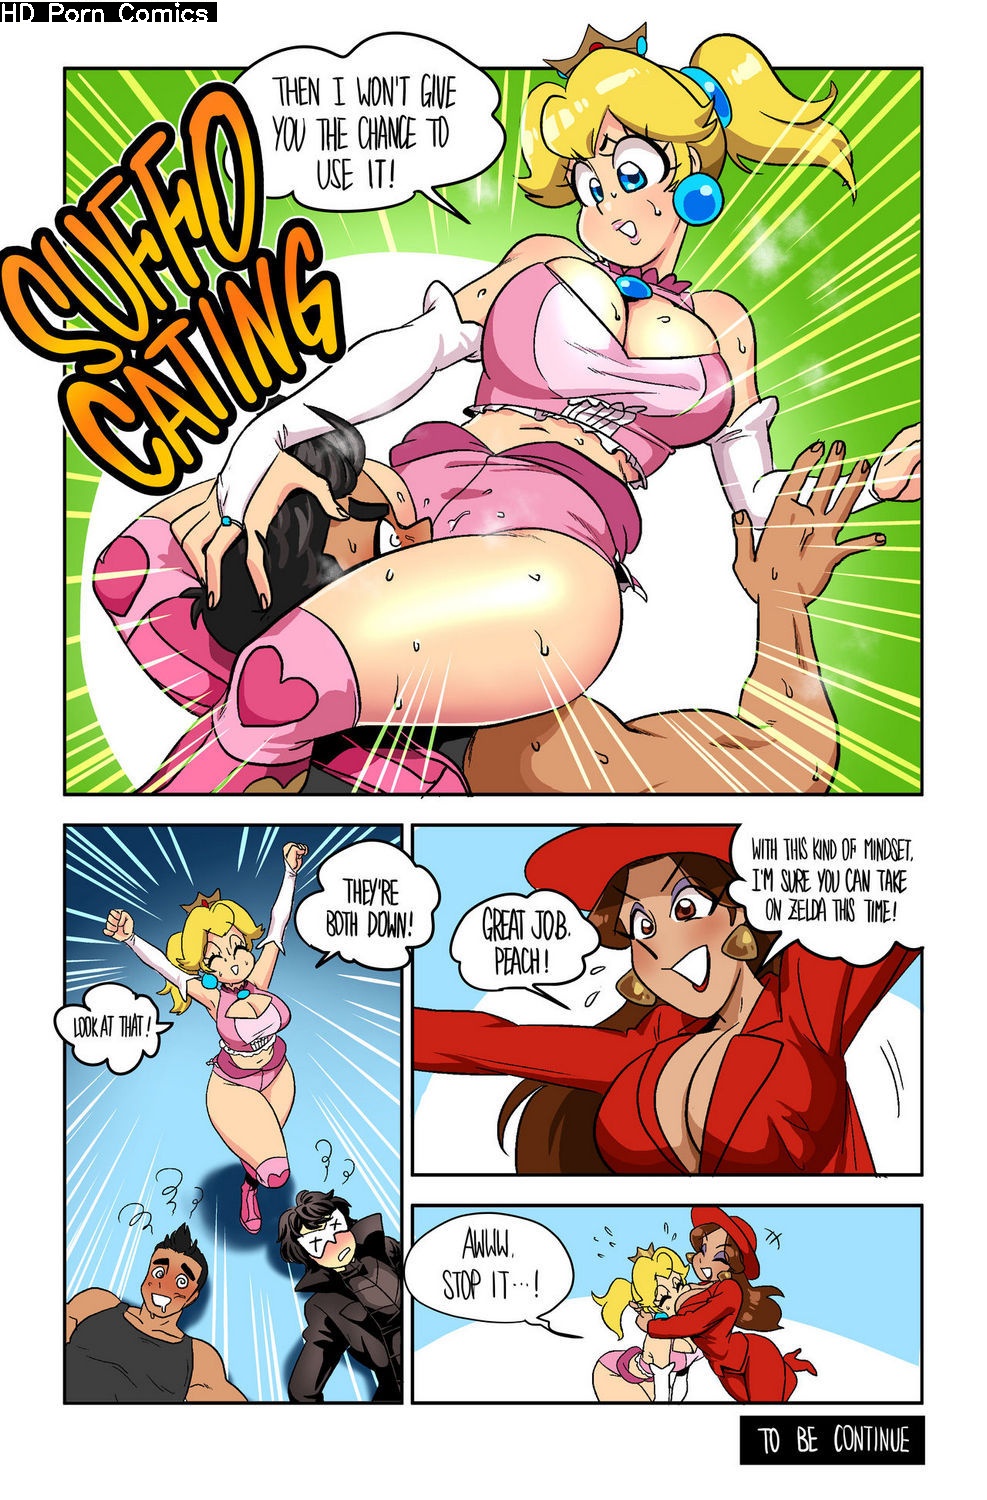 Futa Wrestling Porn - Wrestling Princess 2 - Part 1 comic porn - HD Porn Comics